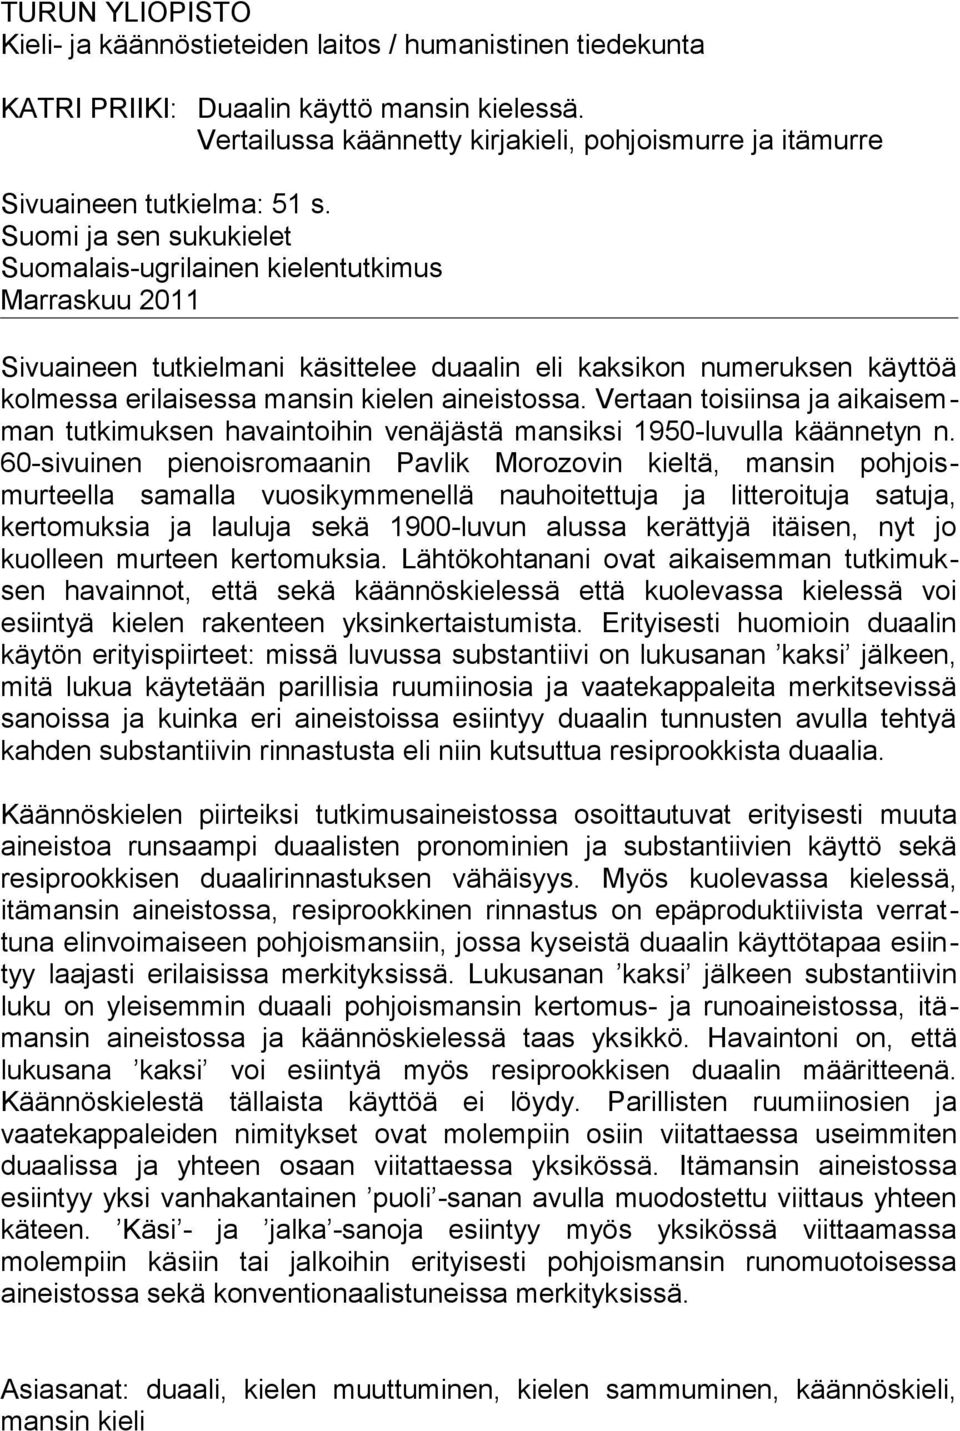 Suomi ja sen sukukielet Suomalais-ugrilainen kielentutkimus Marraskuu 2011 Sivuaineen tutkielmani käsittelee duaalin eli kaksikon numeruksen käyttöä kolmessa erilaisessa mansin kielen aineistossa.